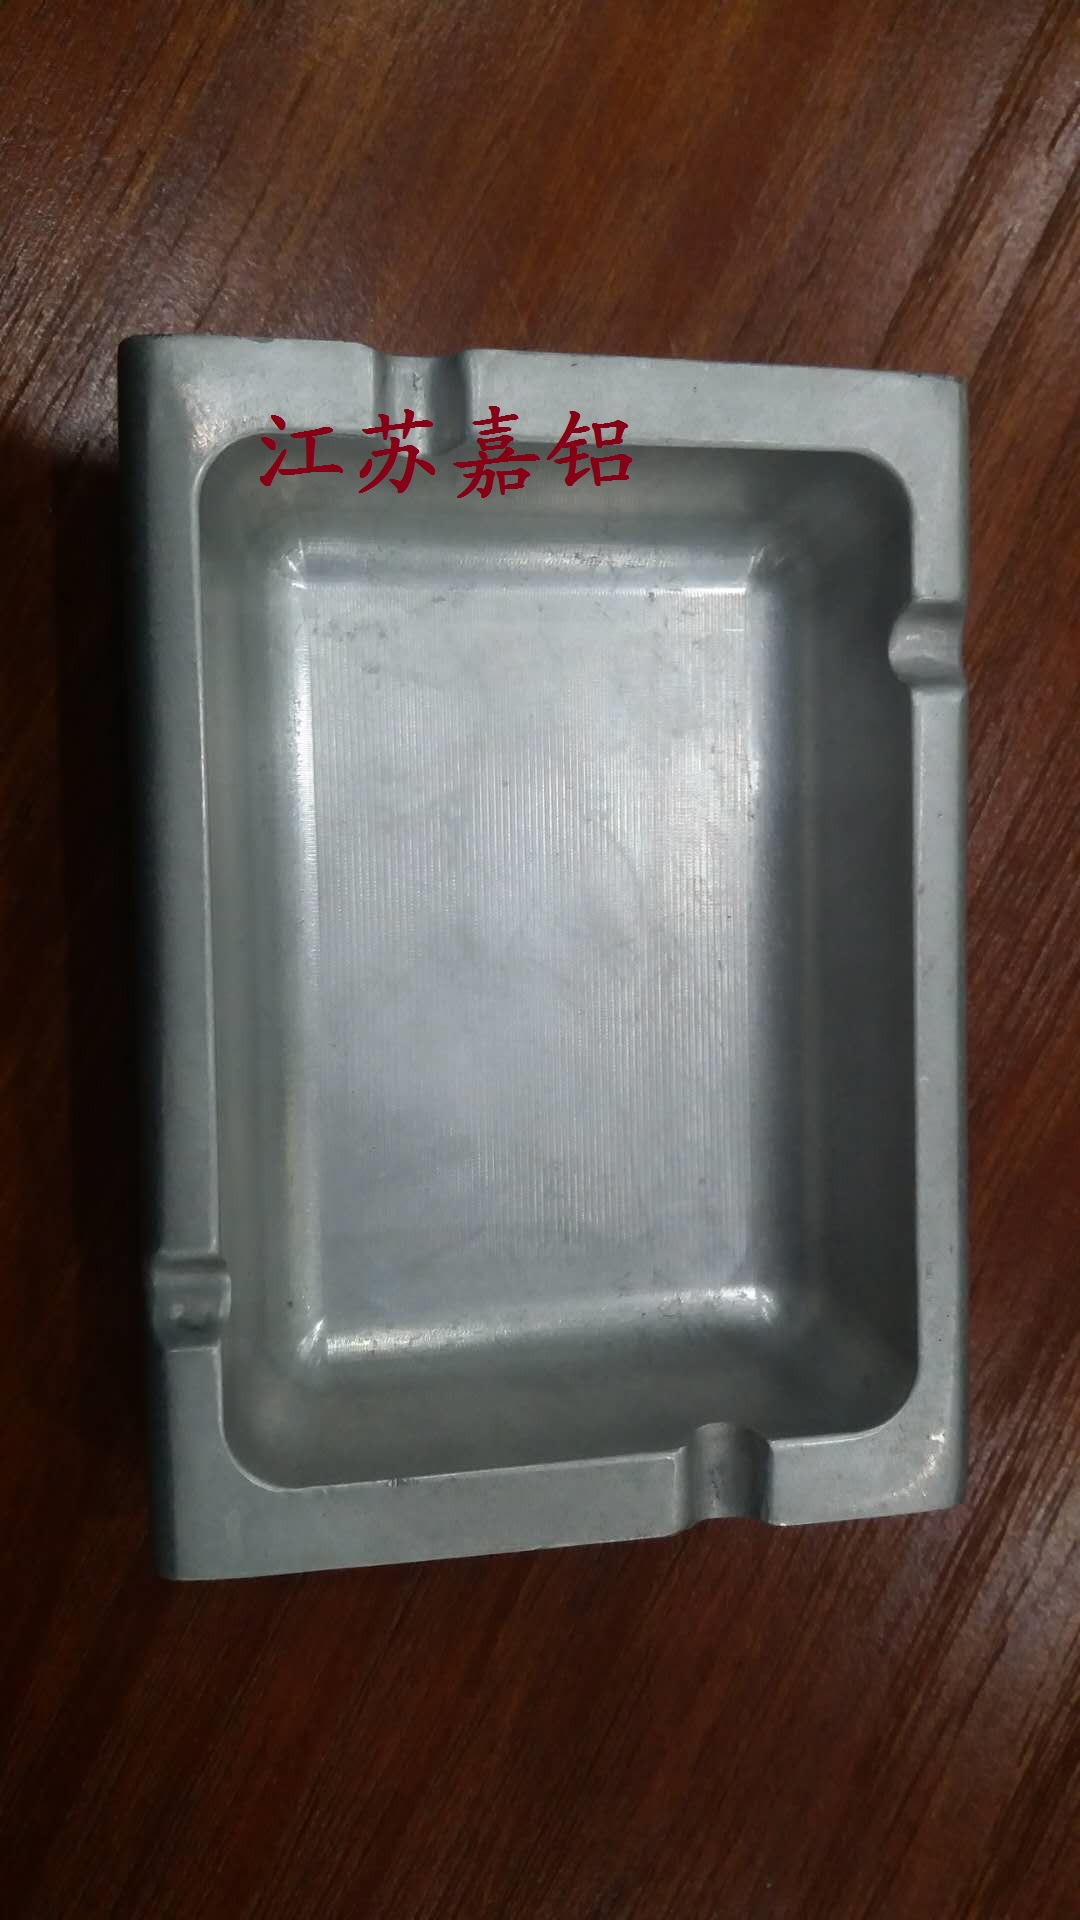 铝锻件肥皂盒_20200417103133.jpg